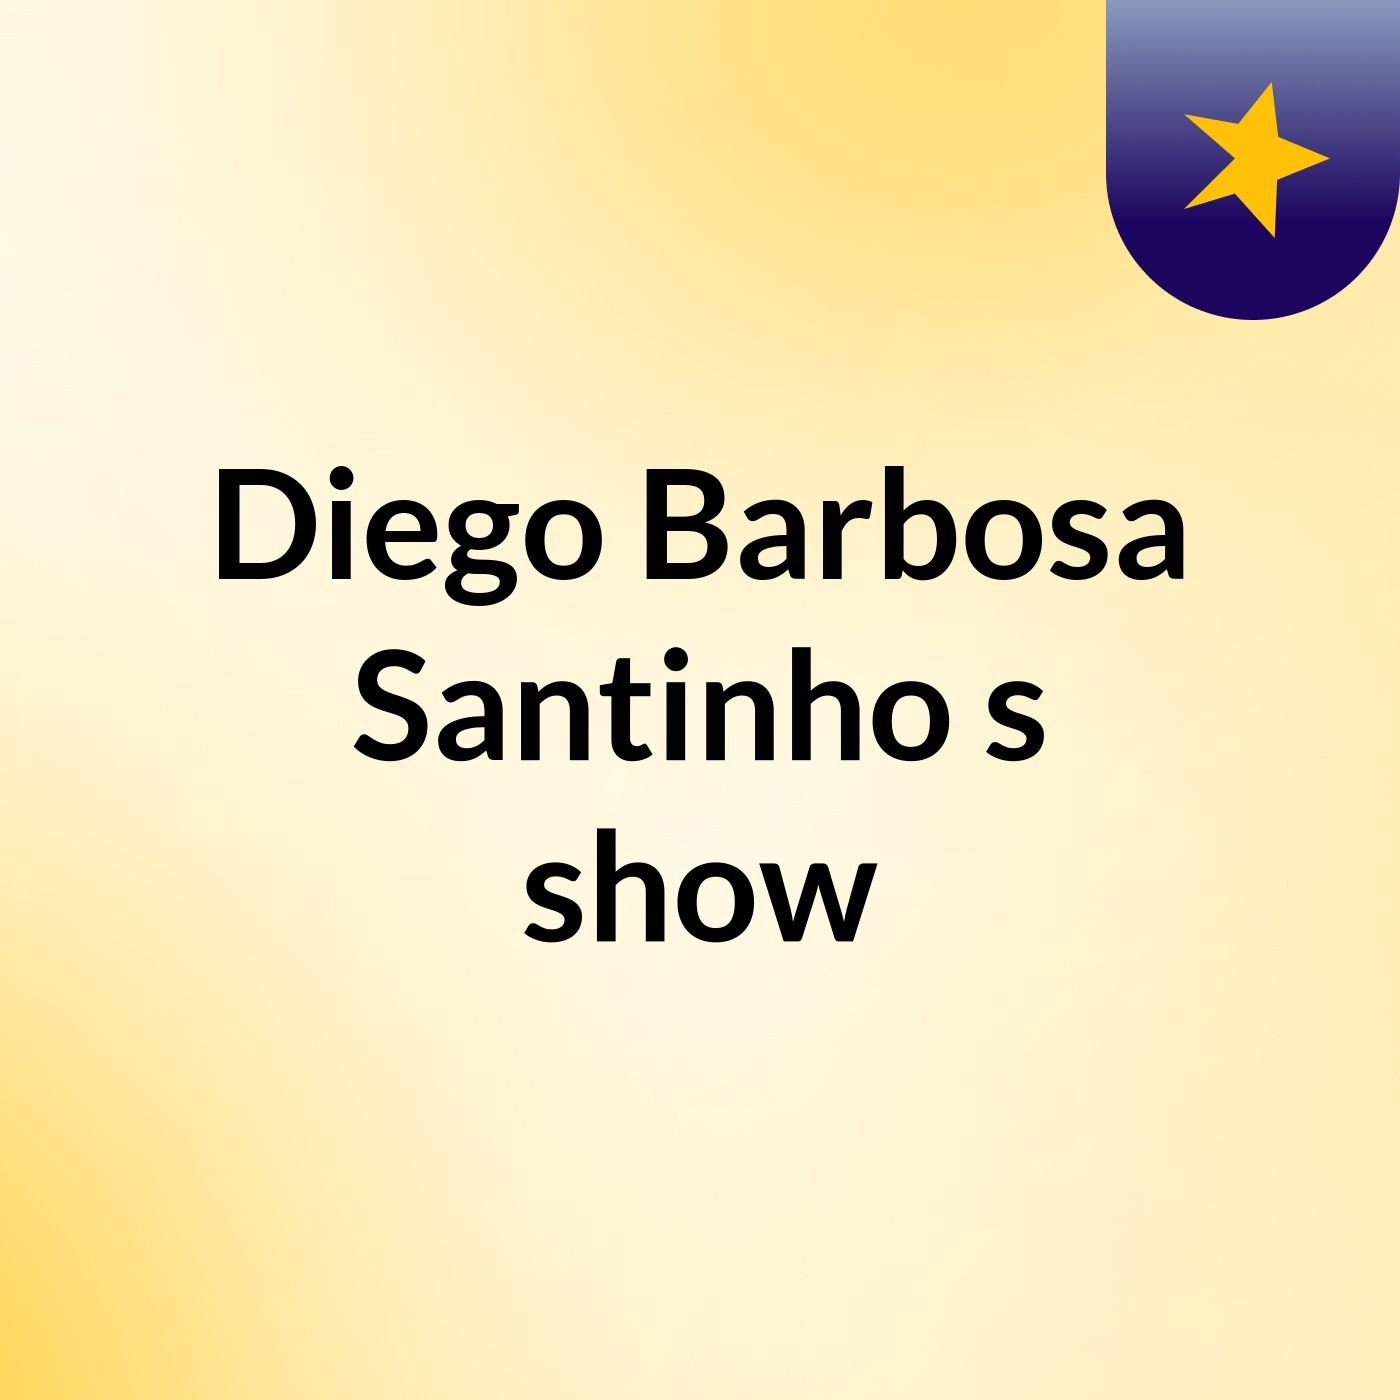 Diego Barbosa Santinho's show